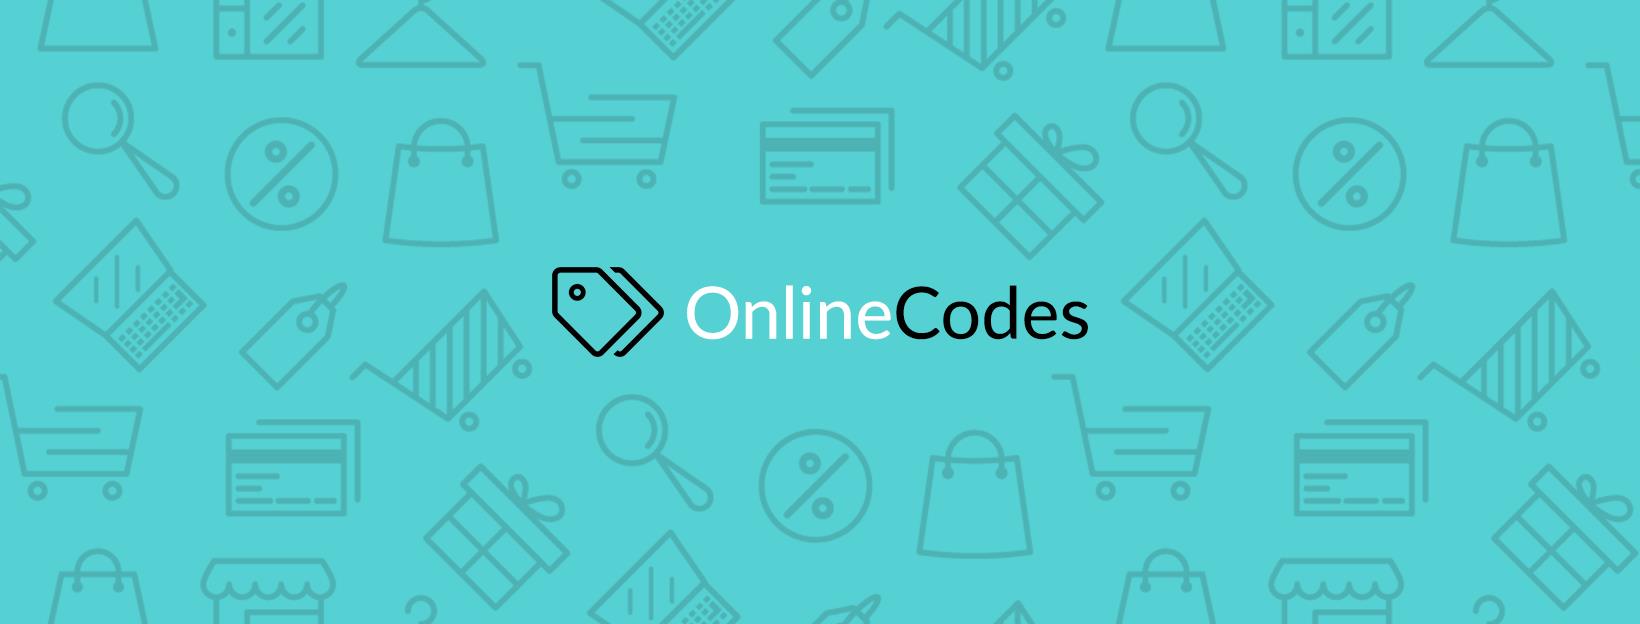 Online Codes